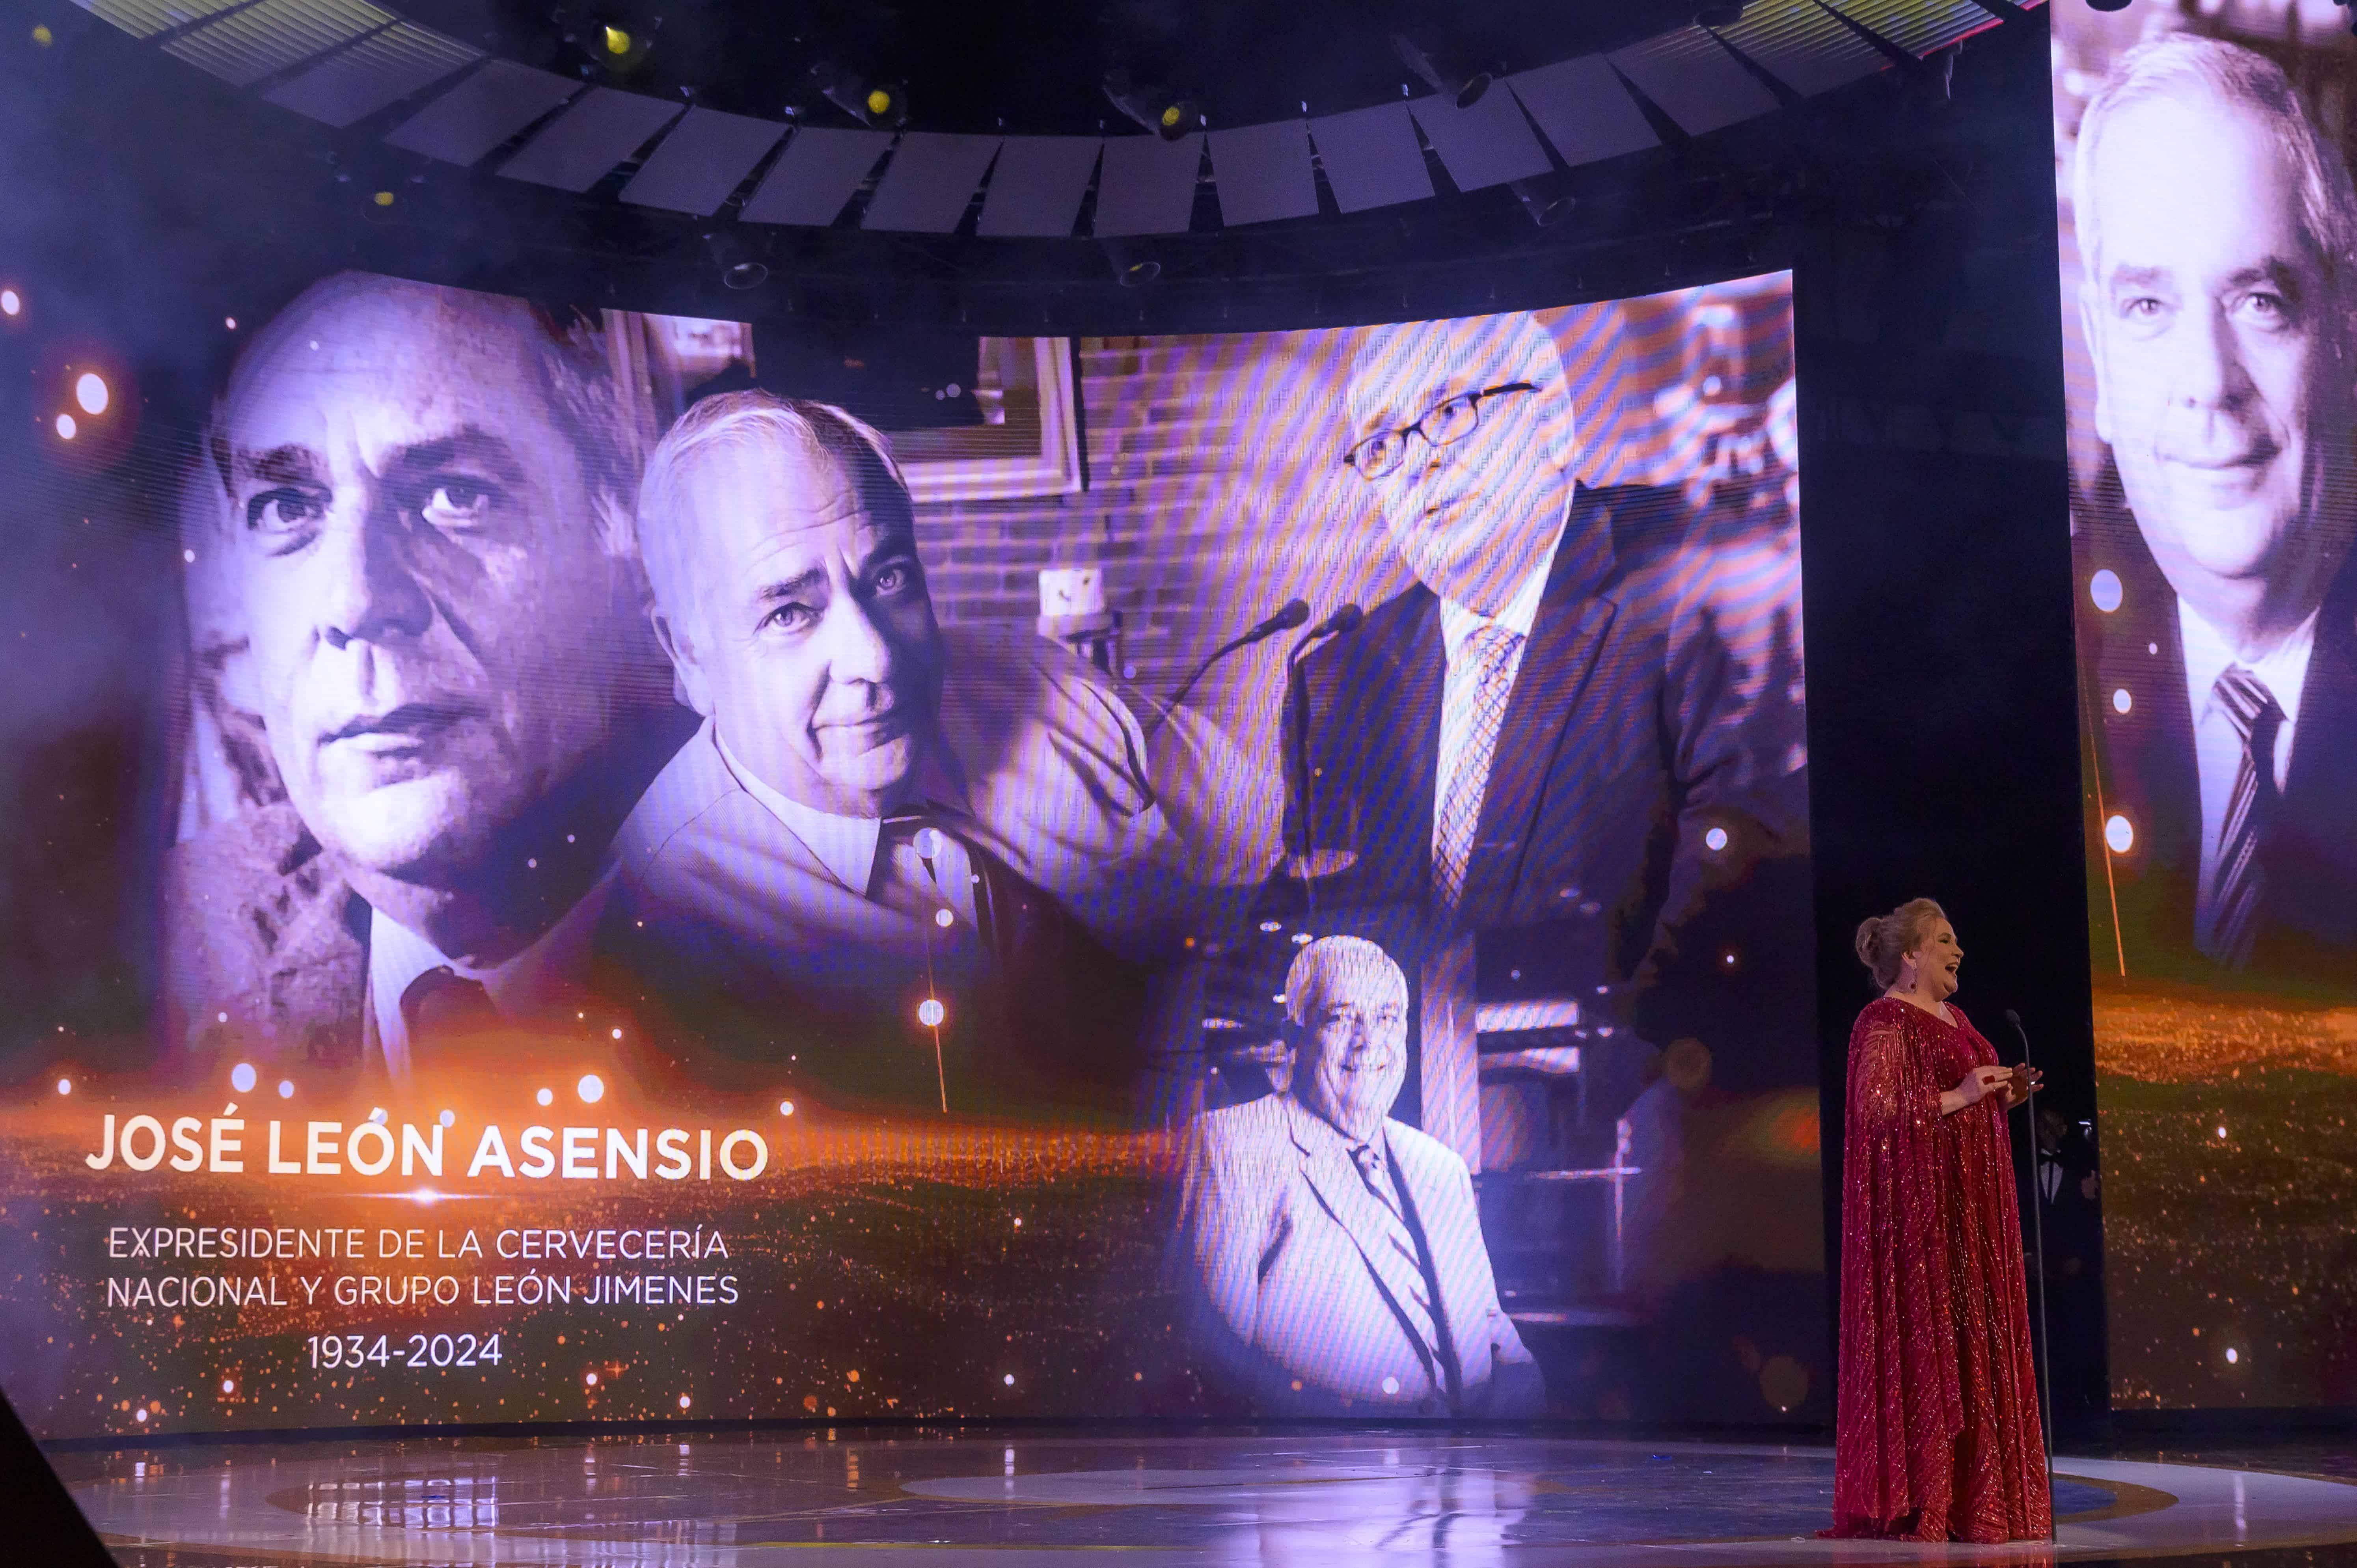 El In Memoriam, un tributo a las figuras fallecidas. Detrás la imagen de José León Asensio, expresidente de la CND. Jatnna Tavárez pronunció unas  sentidas palabras.